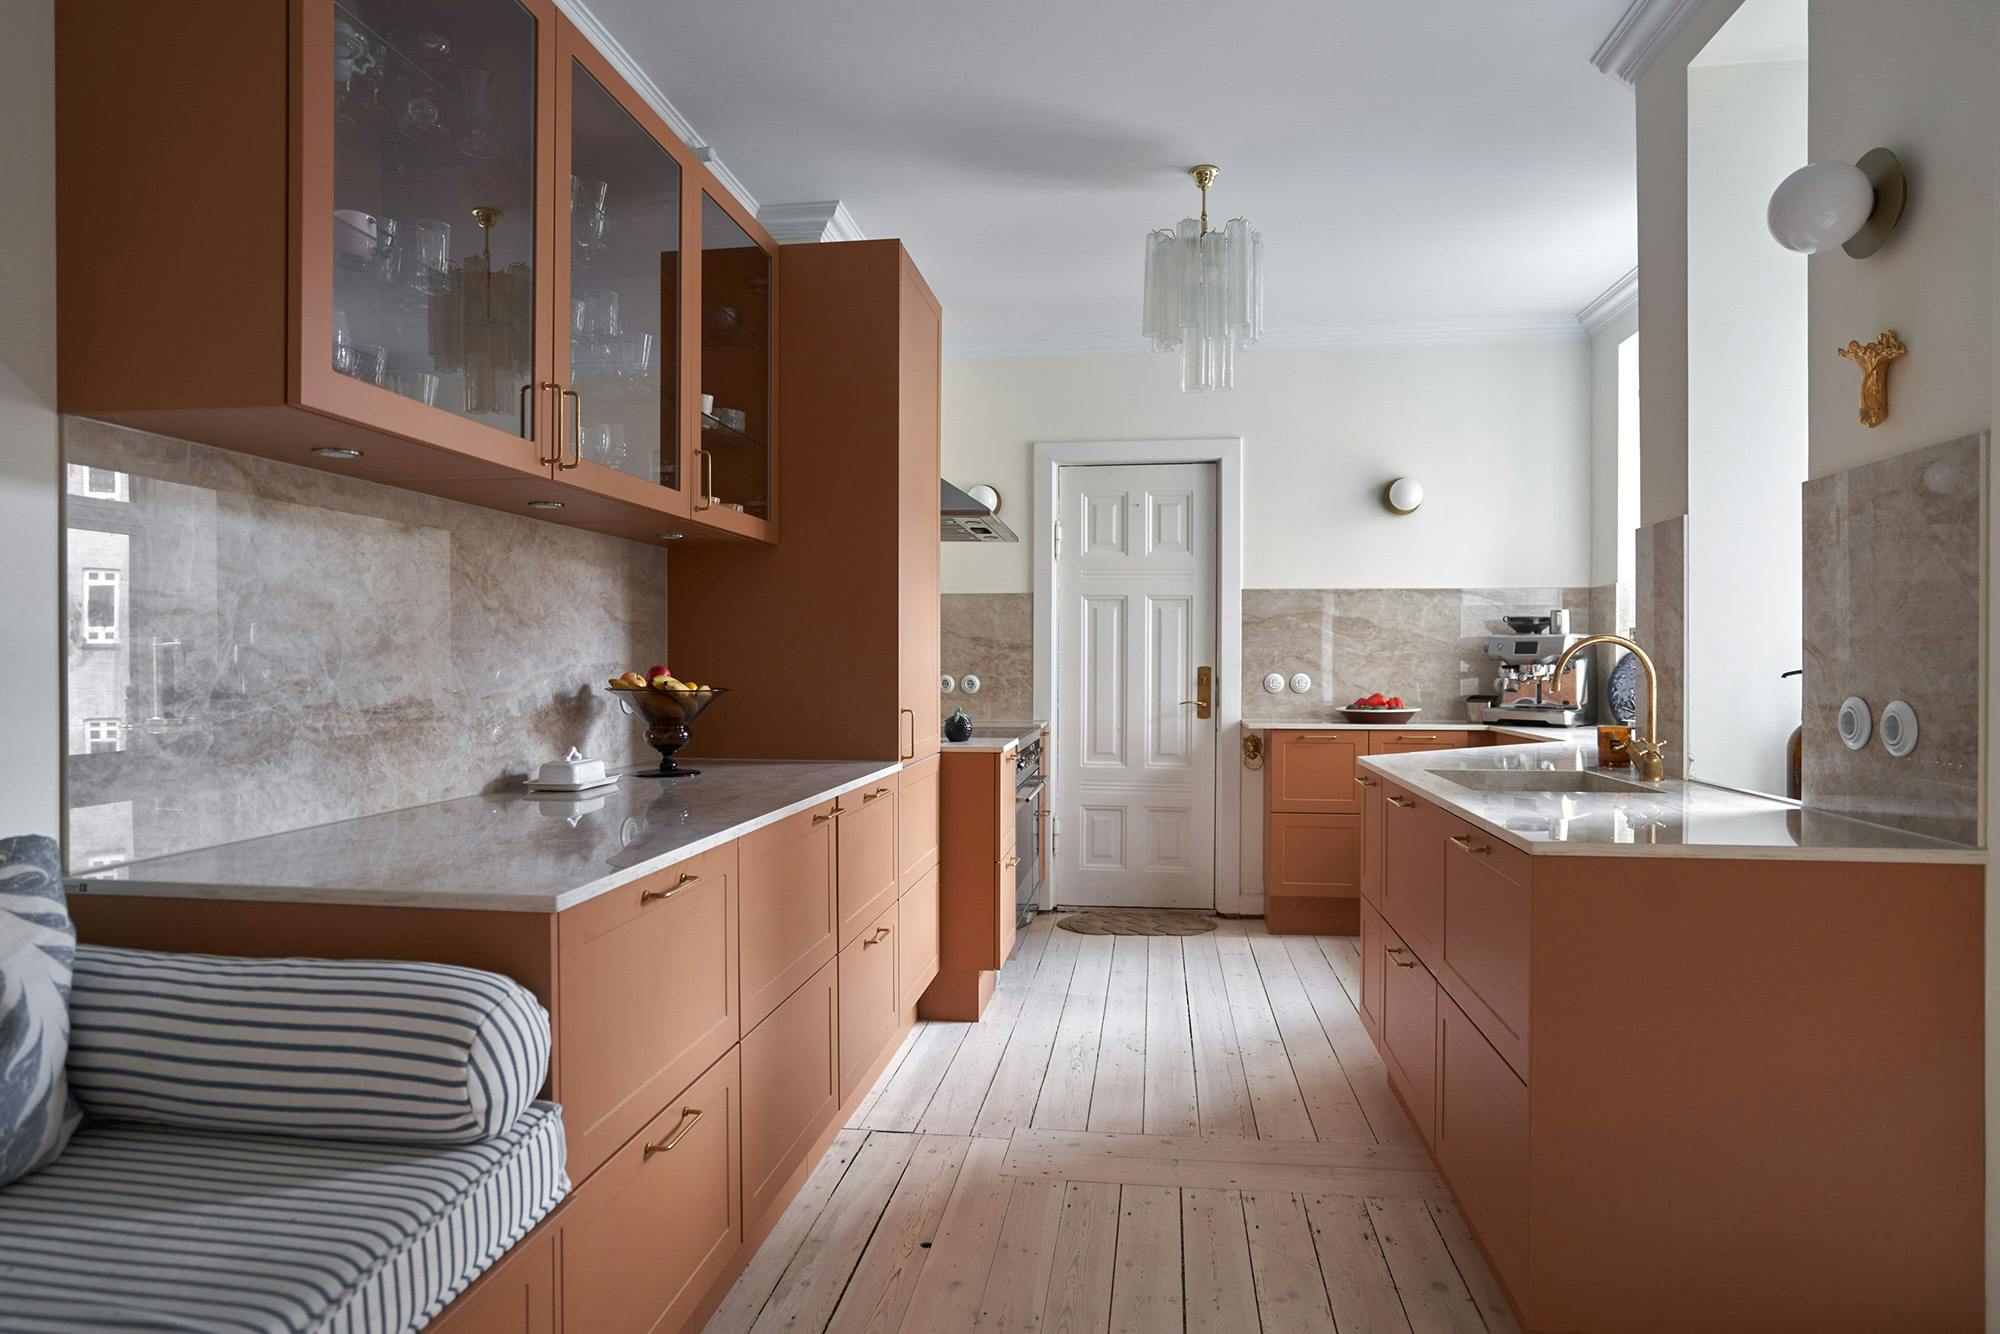 Numero immagine 41 della sezione corrente di Architect and interior designer Memmu Pitkänen chose the beautiful DKTN Helena for her kitchen di Cosentino Italia